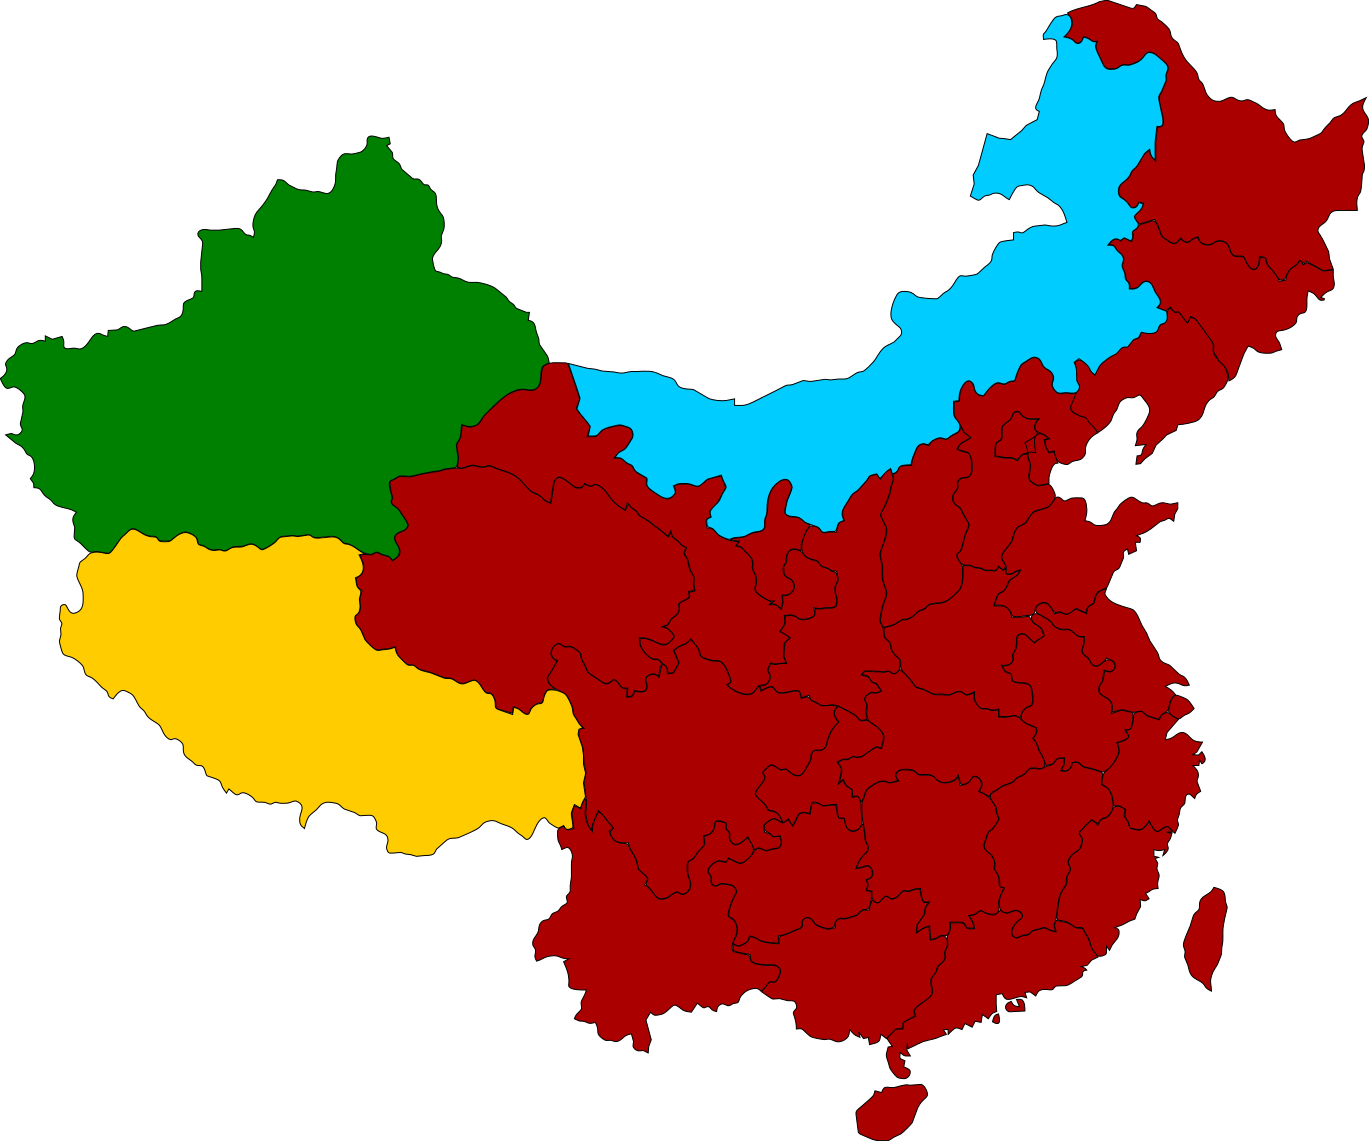 Map of china. Религии Китая карта. Религиозная карта Китая. Конфессиональная карта КНР. Вероисповедания в Китае на карте.